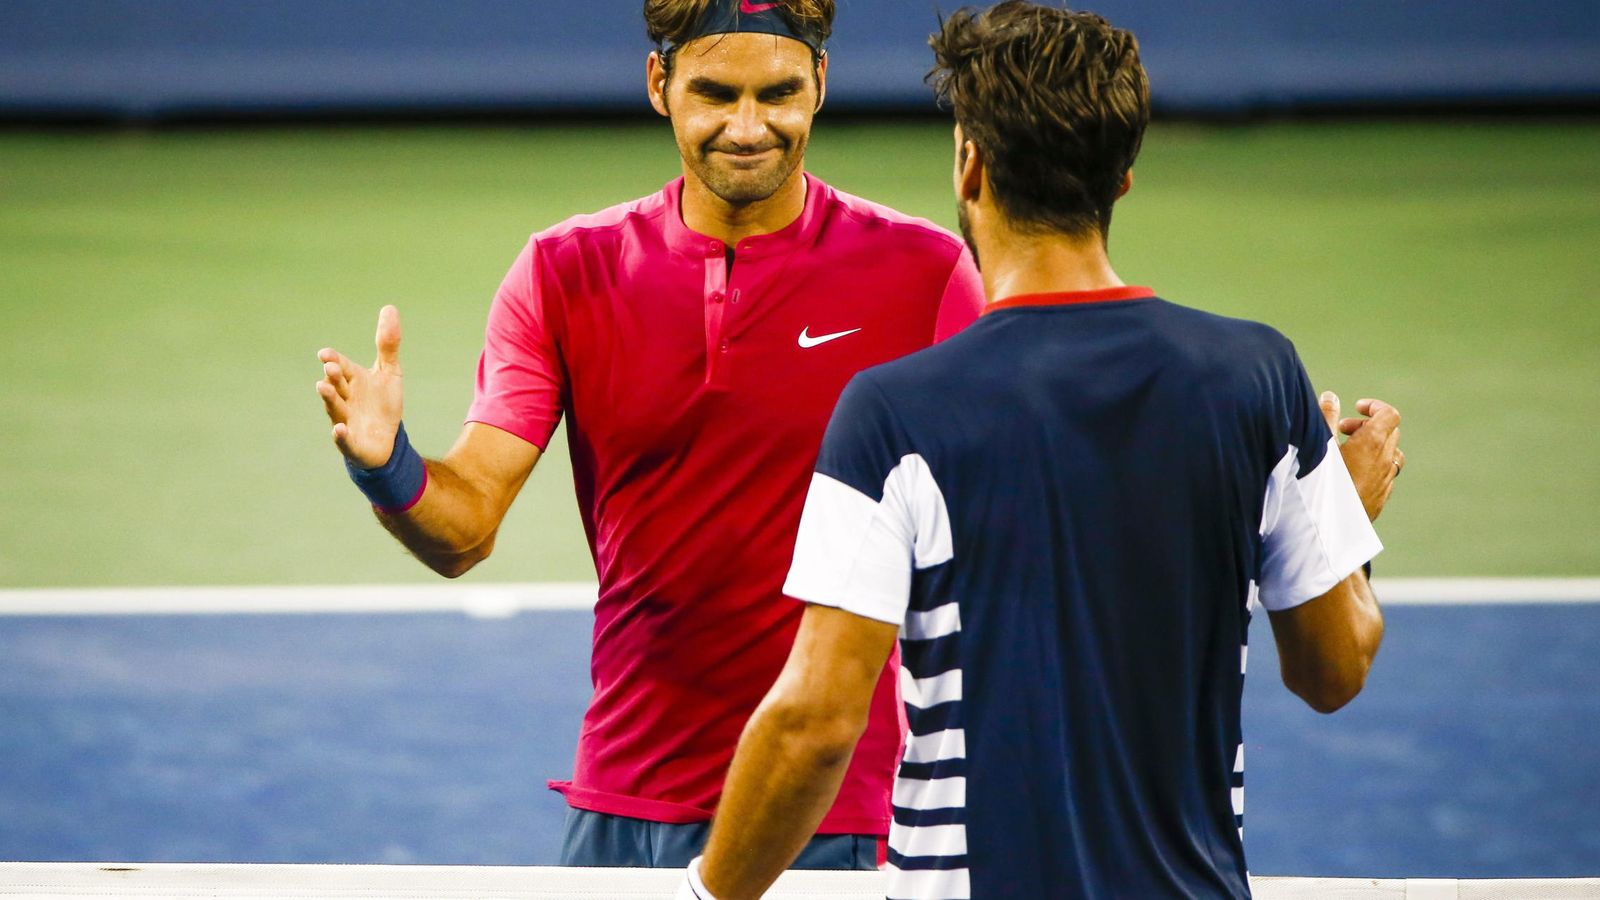 Foto: Feliciano saluda a Federer tras ser eliminado (Reuters).